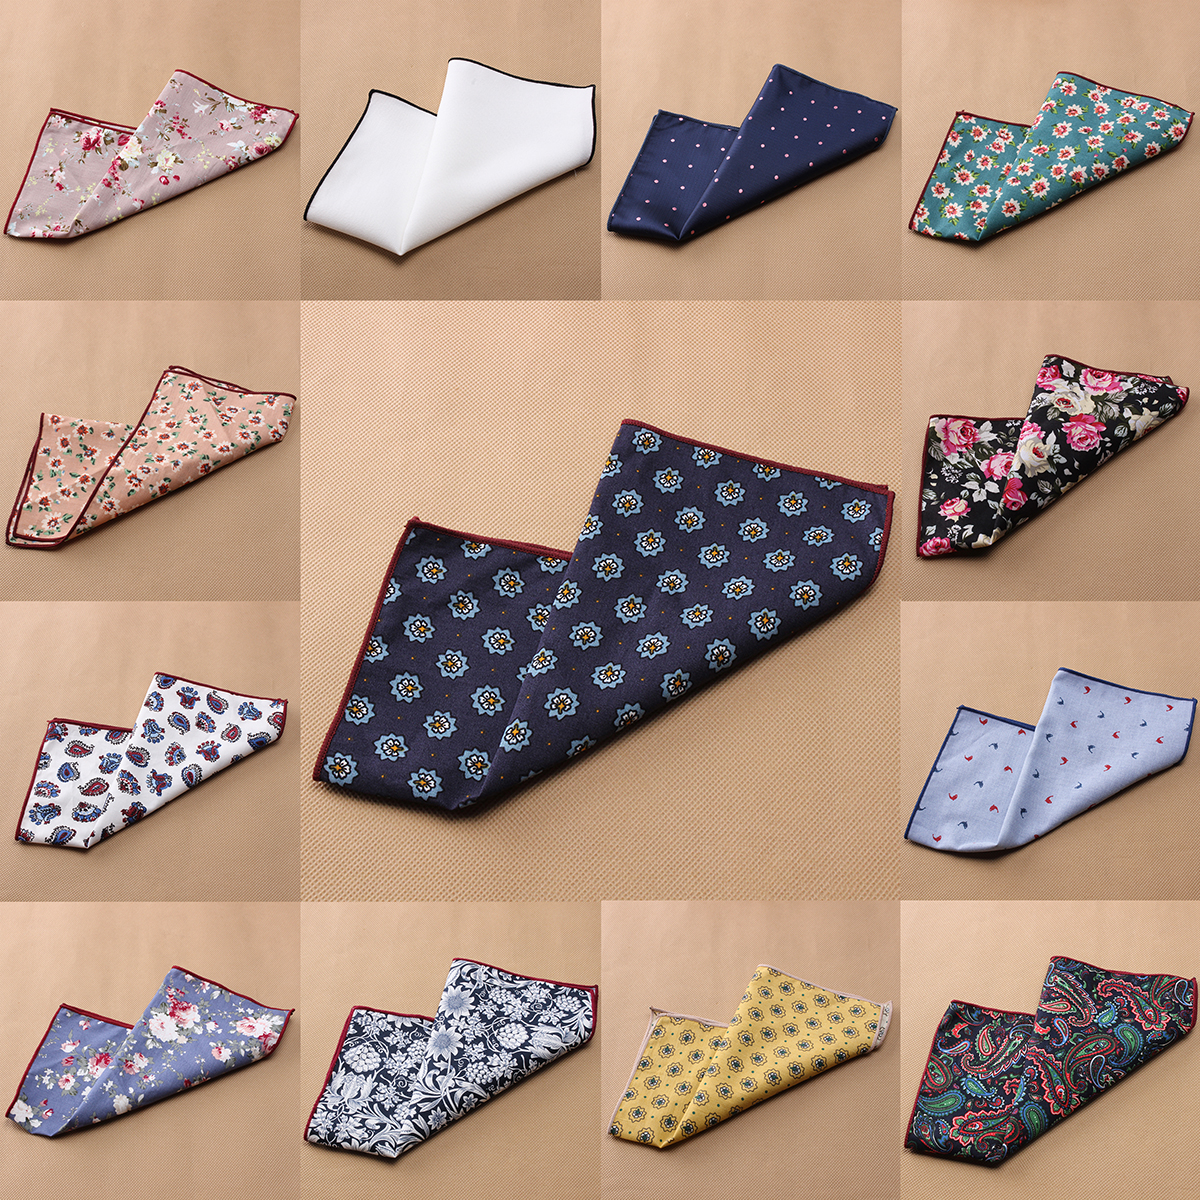 1-Pc-Men-Floral-Cotton-Pocket-Square-Handkerchief-Wedding-Hanky-Suit-Accessories-1053927